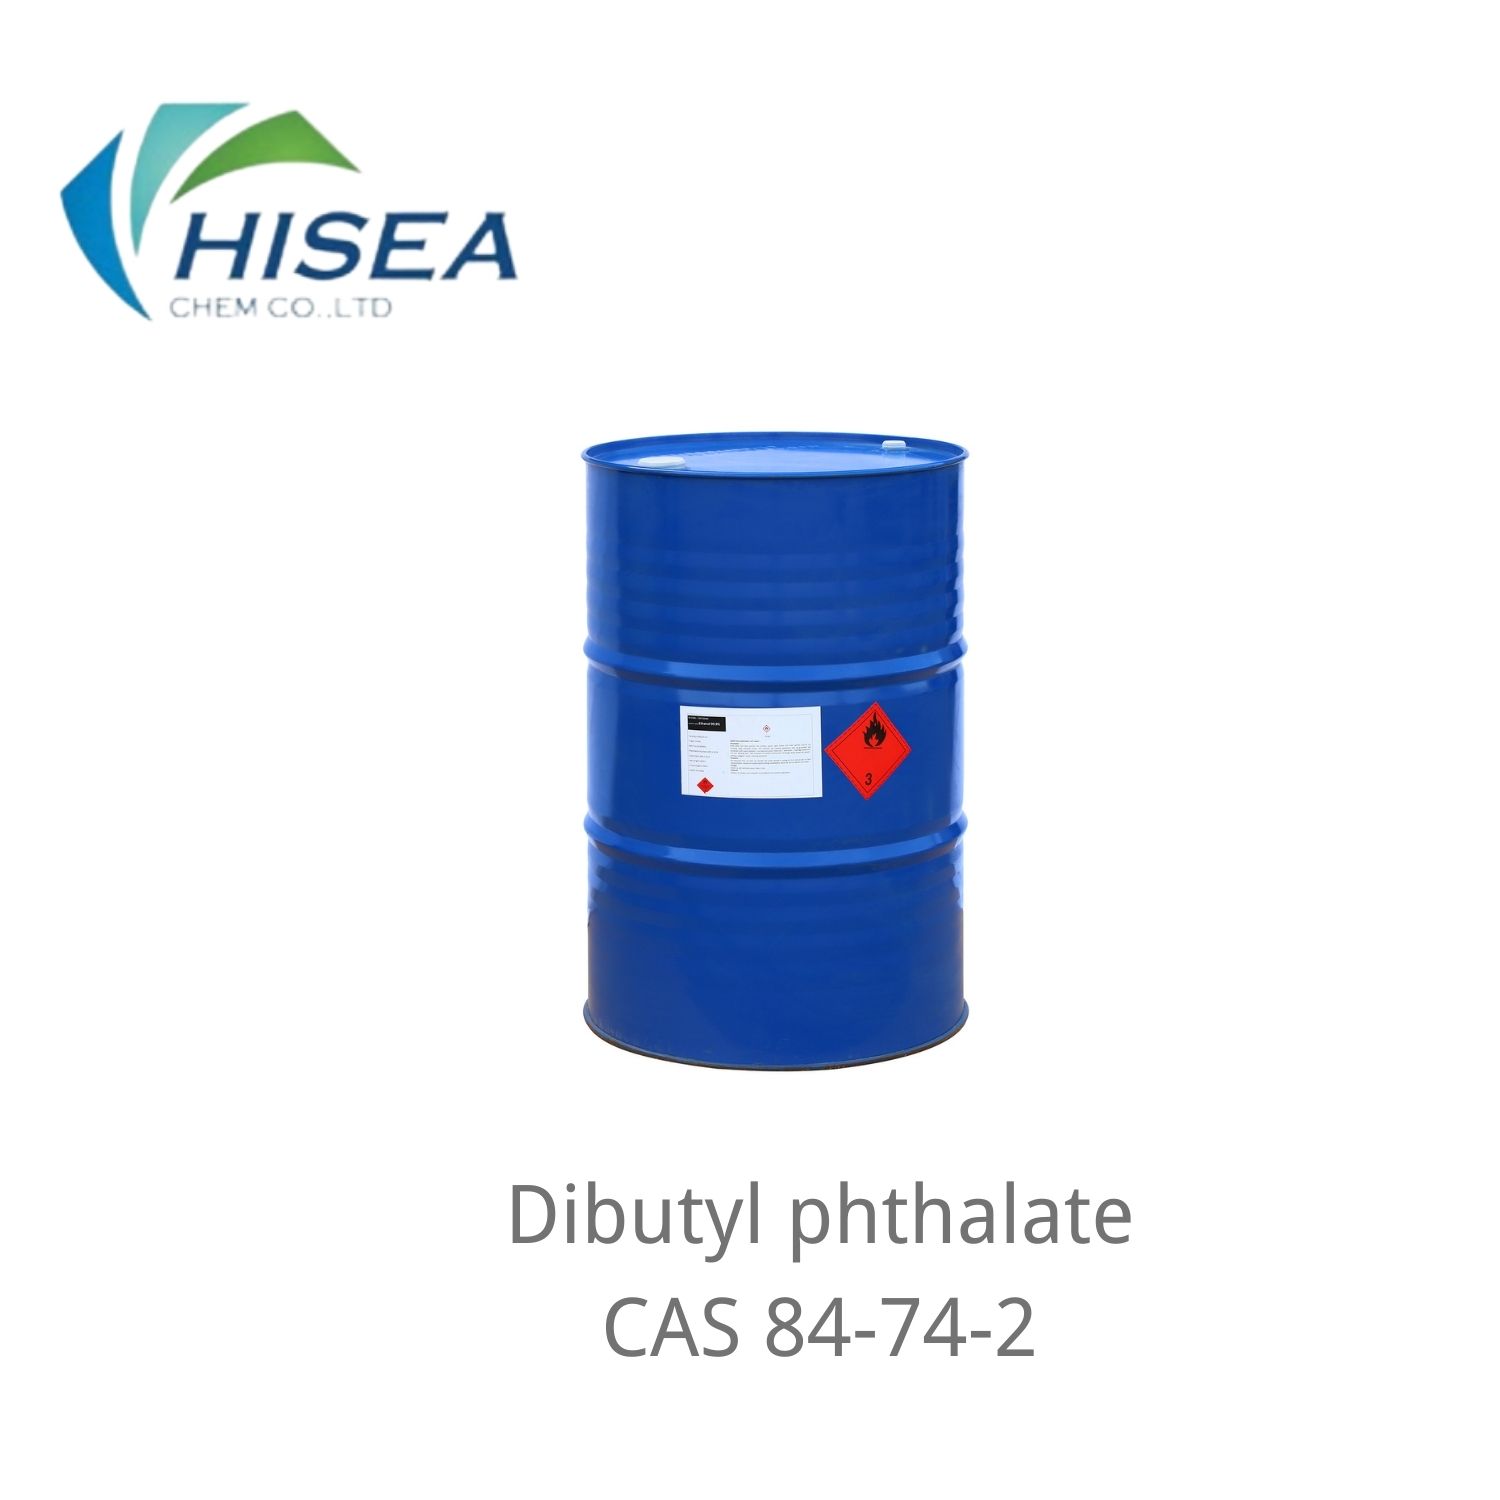 الكريستال الملدن Dibutyl Phthalate المعتمد من ادارة الاغذية والعقاقير